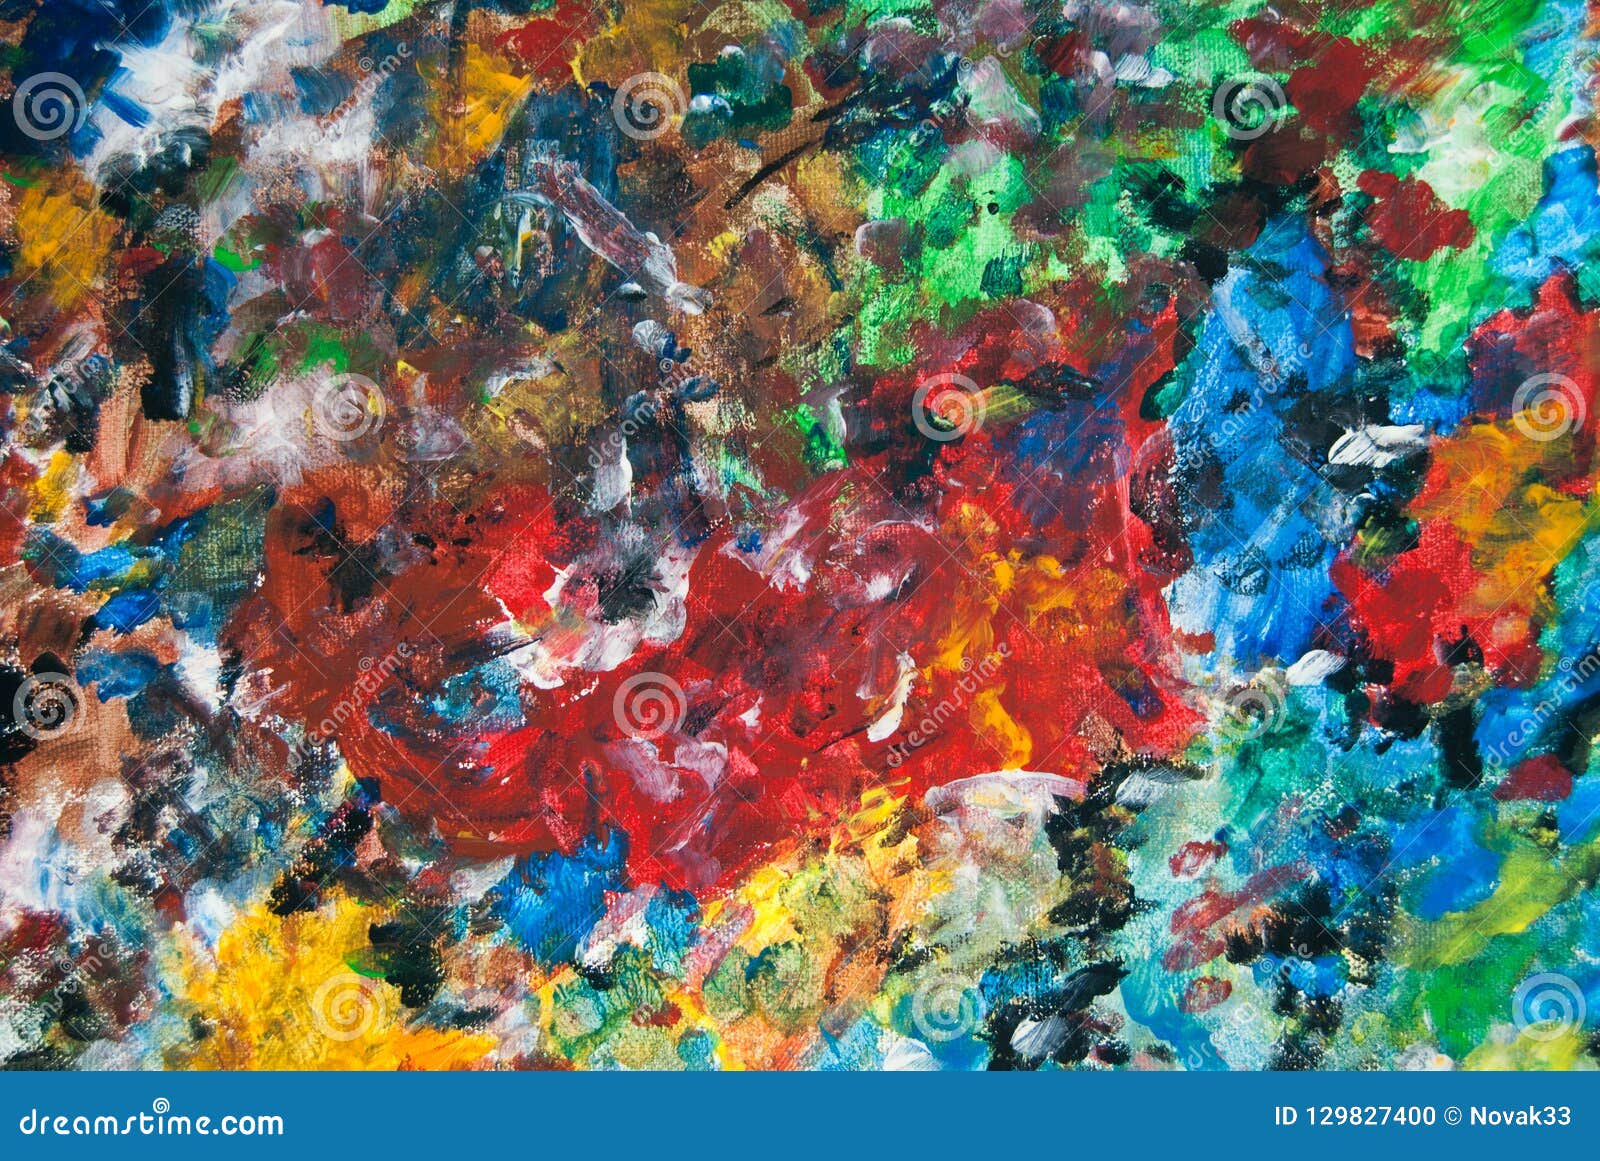 Pintura Infantil Em Papel Com Tintas Coloridas Na Escola Imagem de Stock -  Imagem de idade, vazio: 232278159